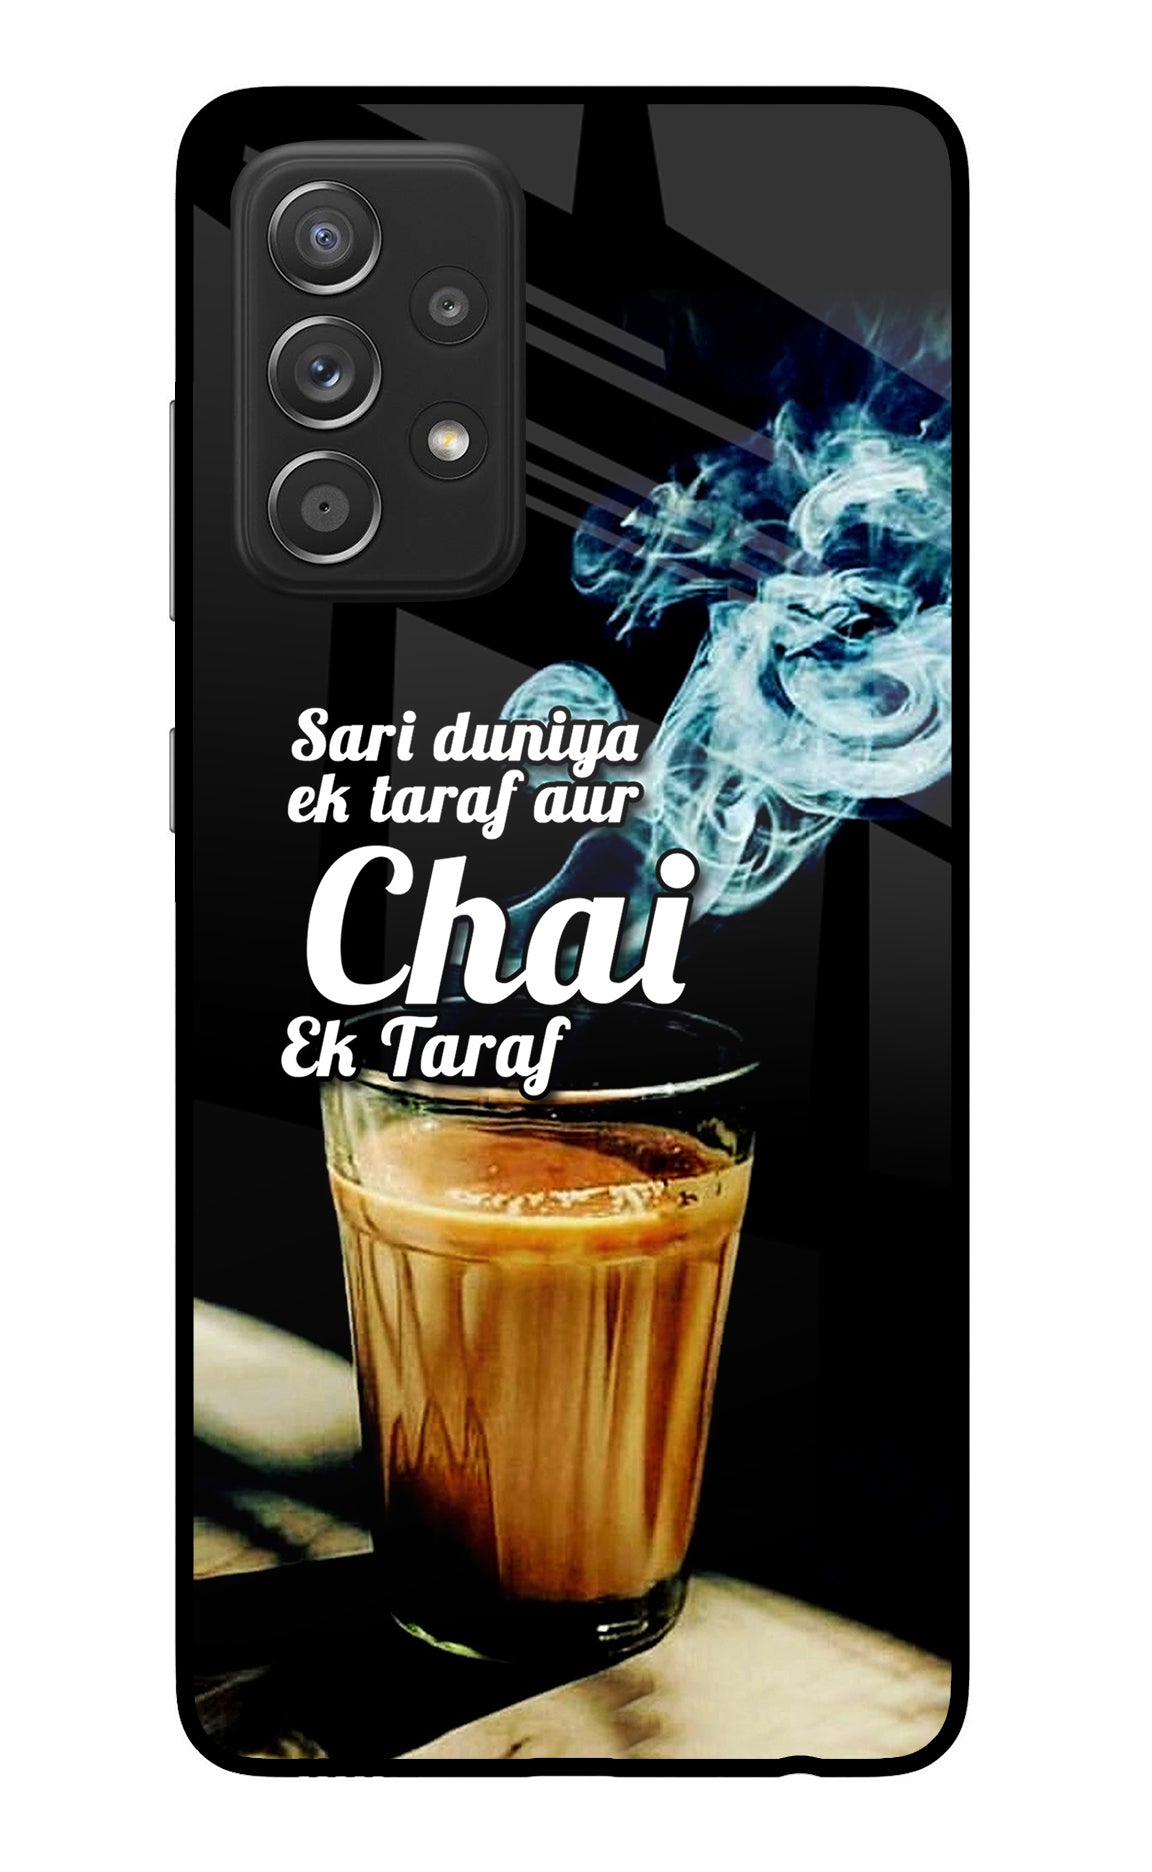 Chai Ek Taraf Quote Samsung A52/A52s 5G Back Cover